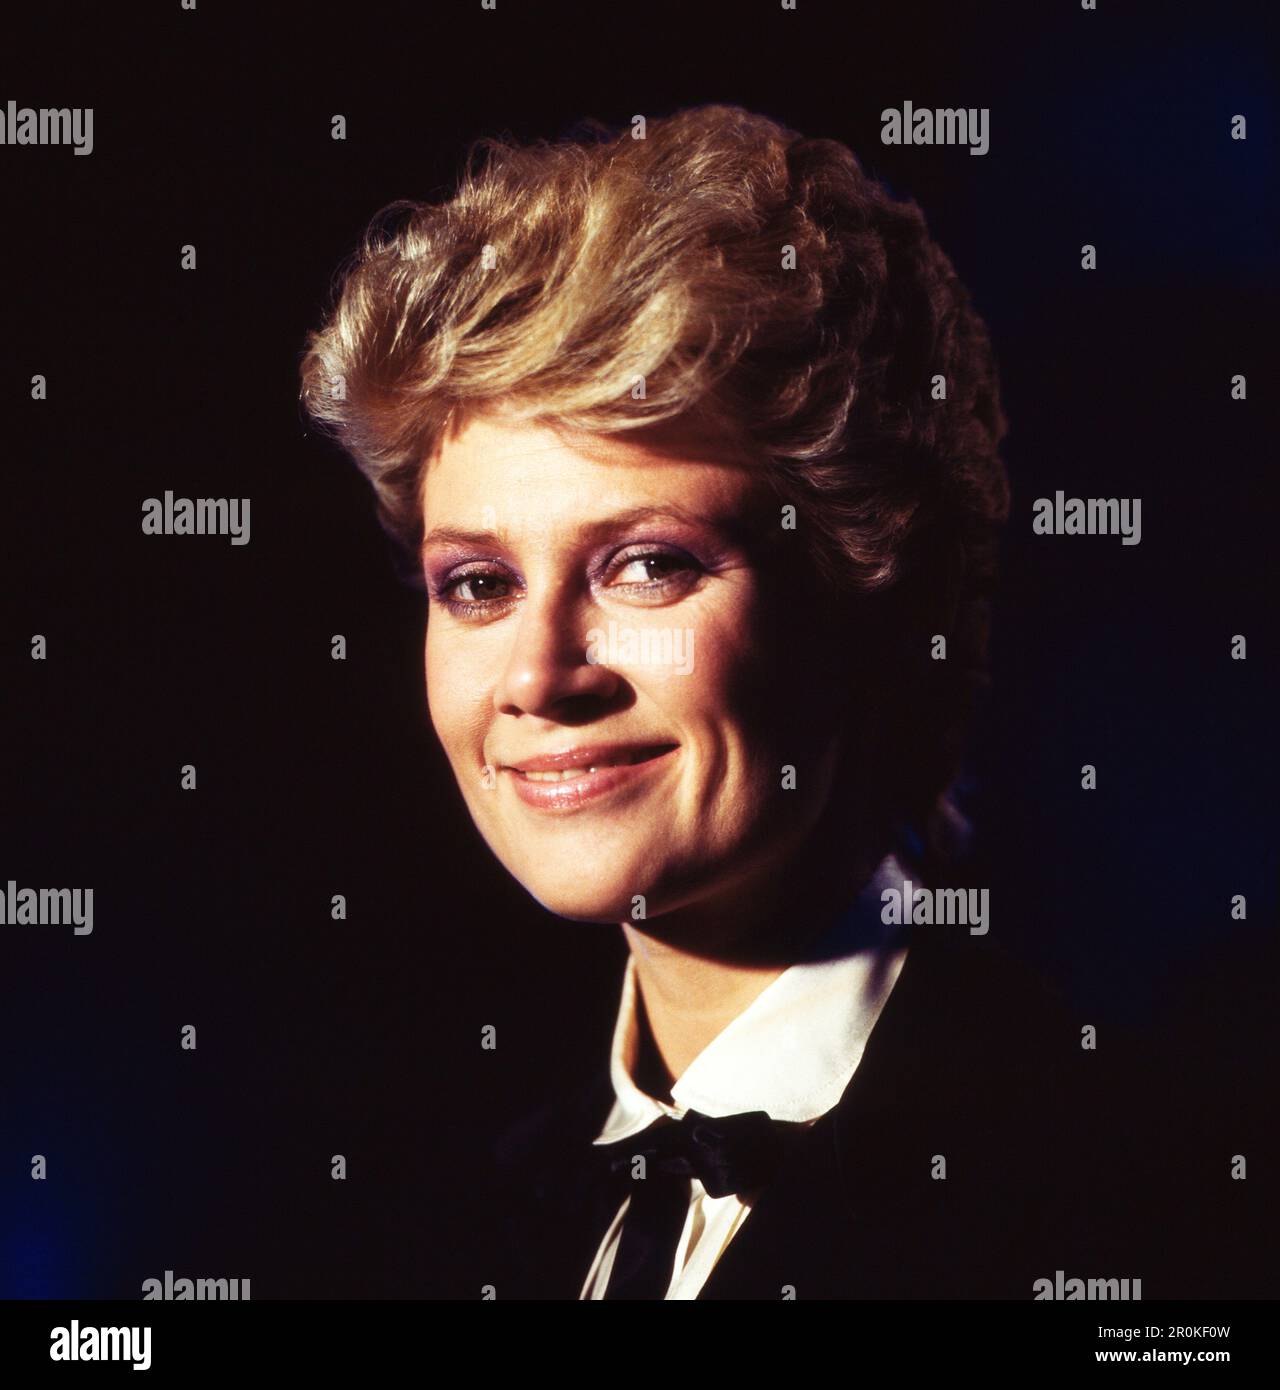 Gitte Haenning, dänische Sängerin und Schauspielerin, Deutschland 1978. Foto Stock